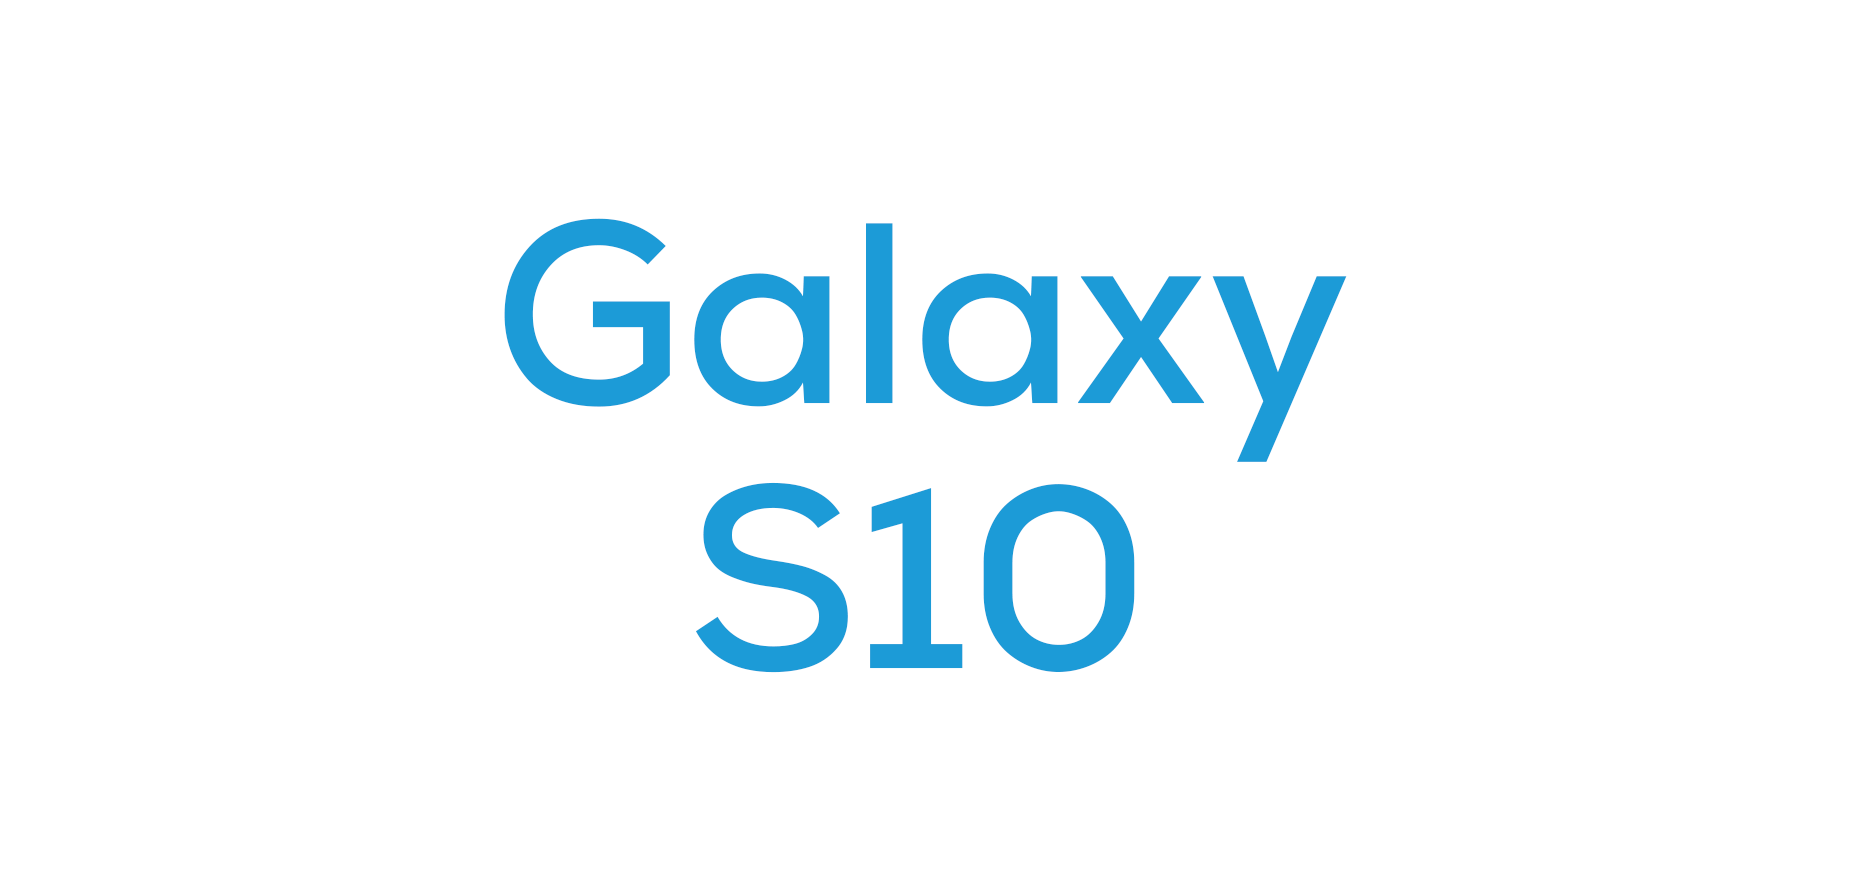 Galaxy S10